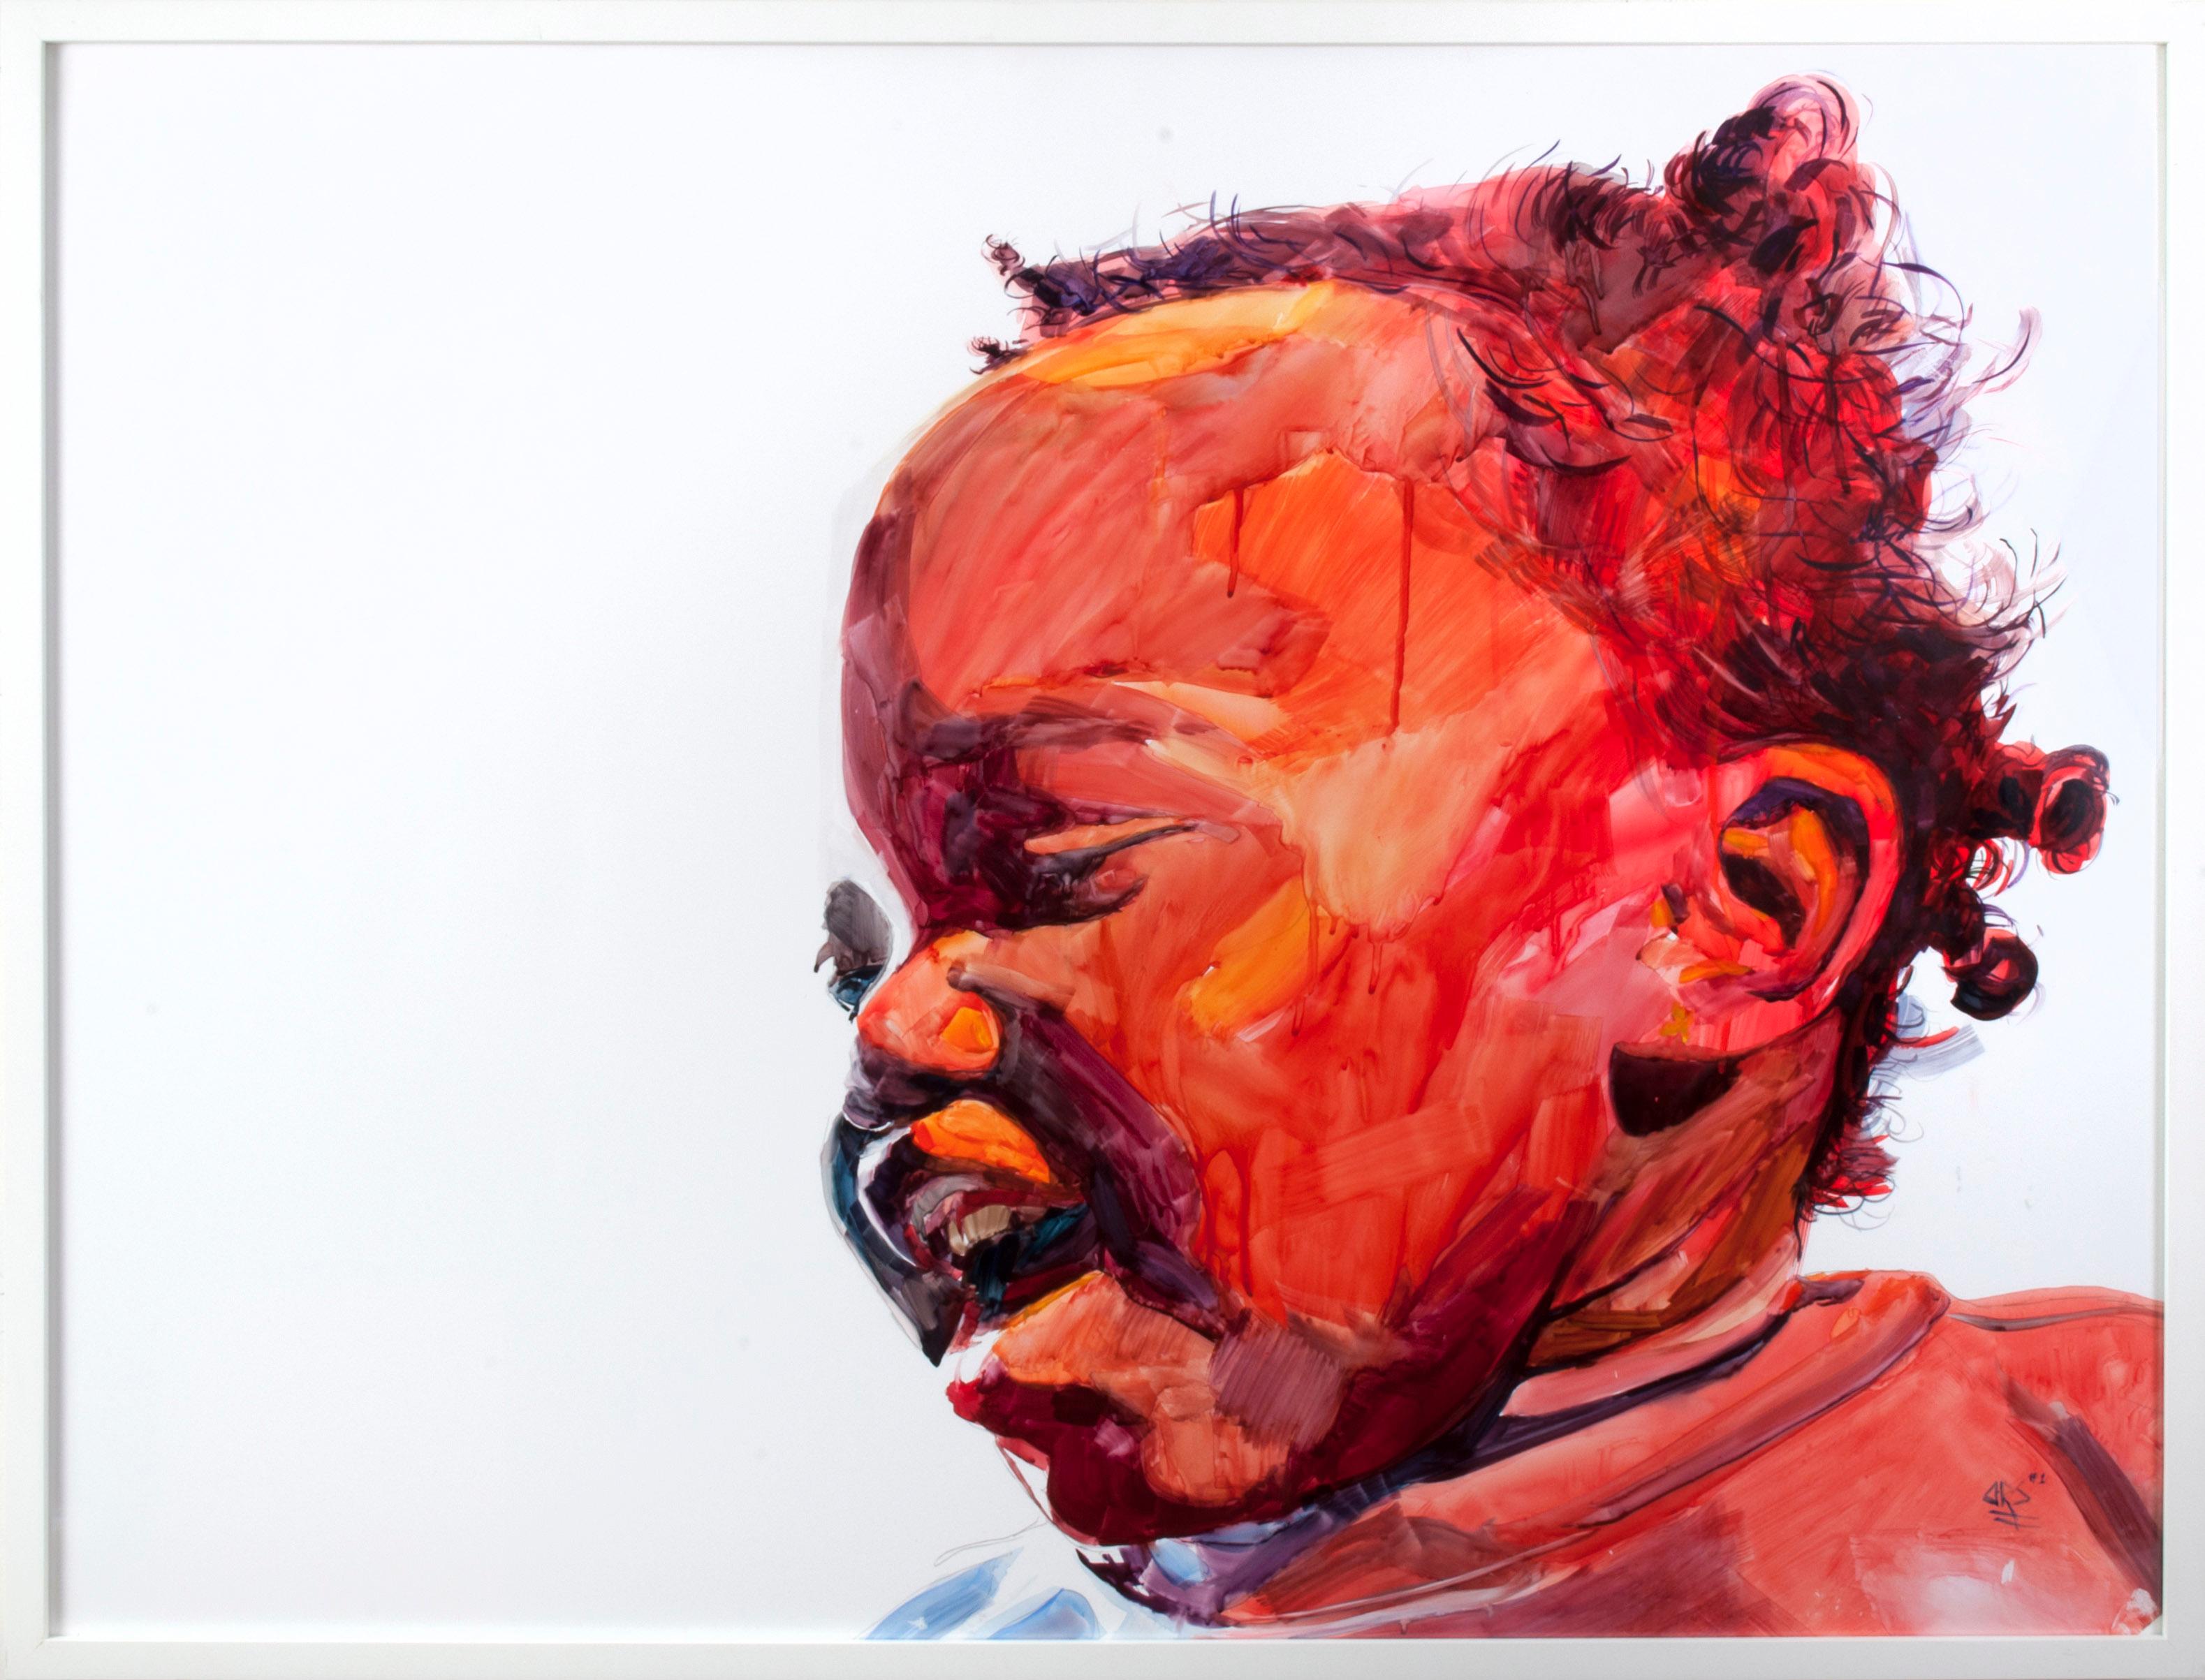 Darius Steward Portrait - "R"